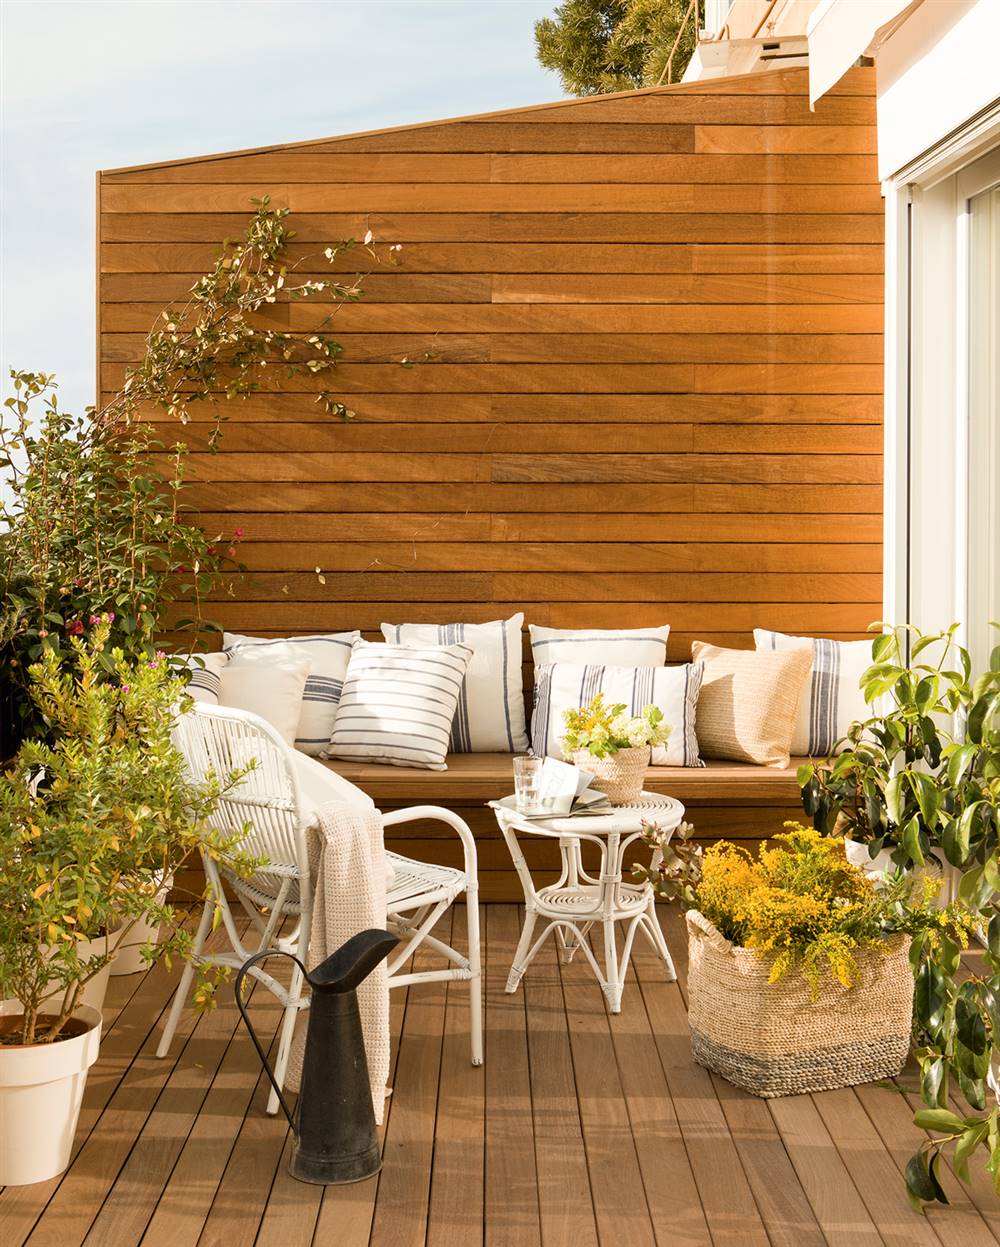 Pequeña terraza con estar, pared con lamas de madera, suelo entarimado, banco, cojines a rayas y sillas de fibras vegetales